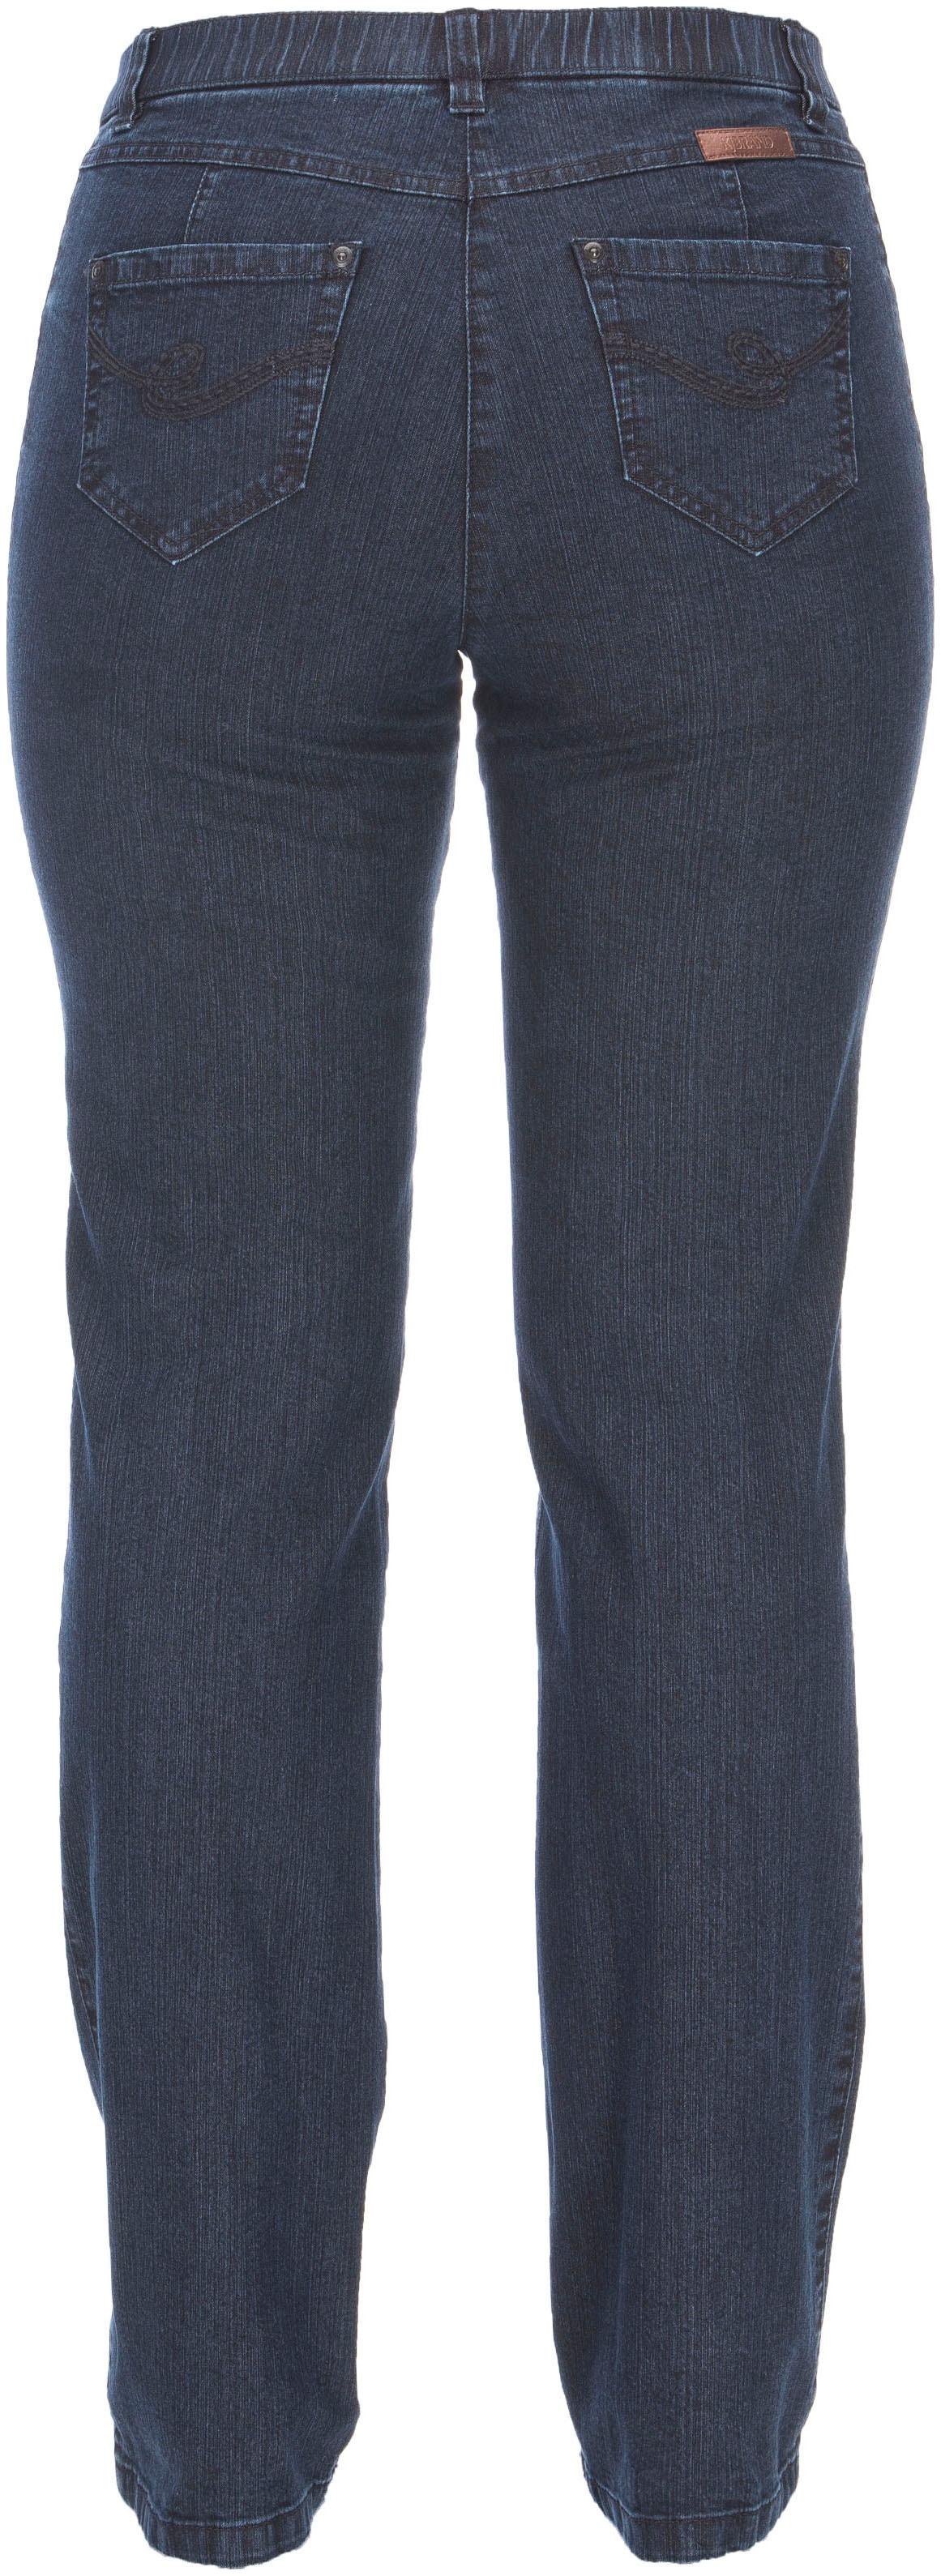 »Betty Denim Stretch-Jeans Stretch« KjBRAND kaufen